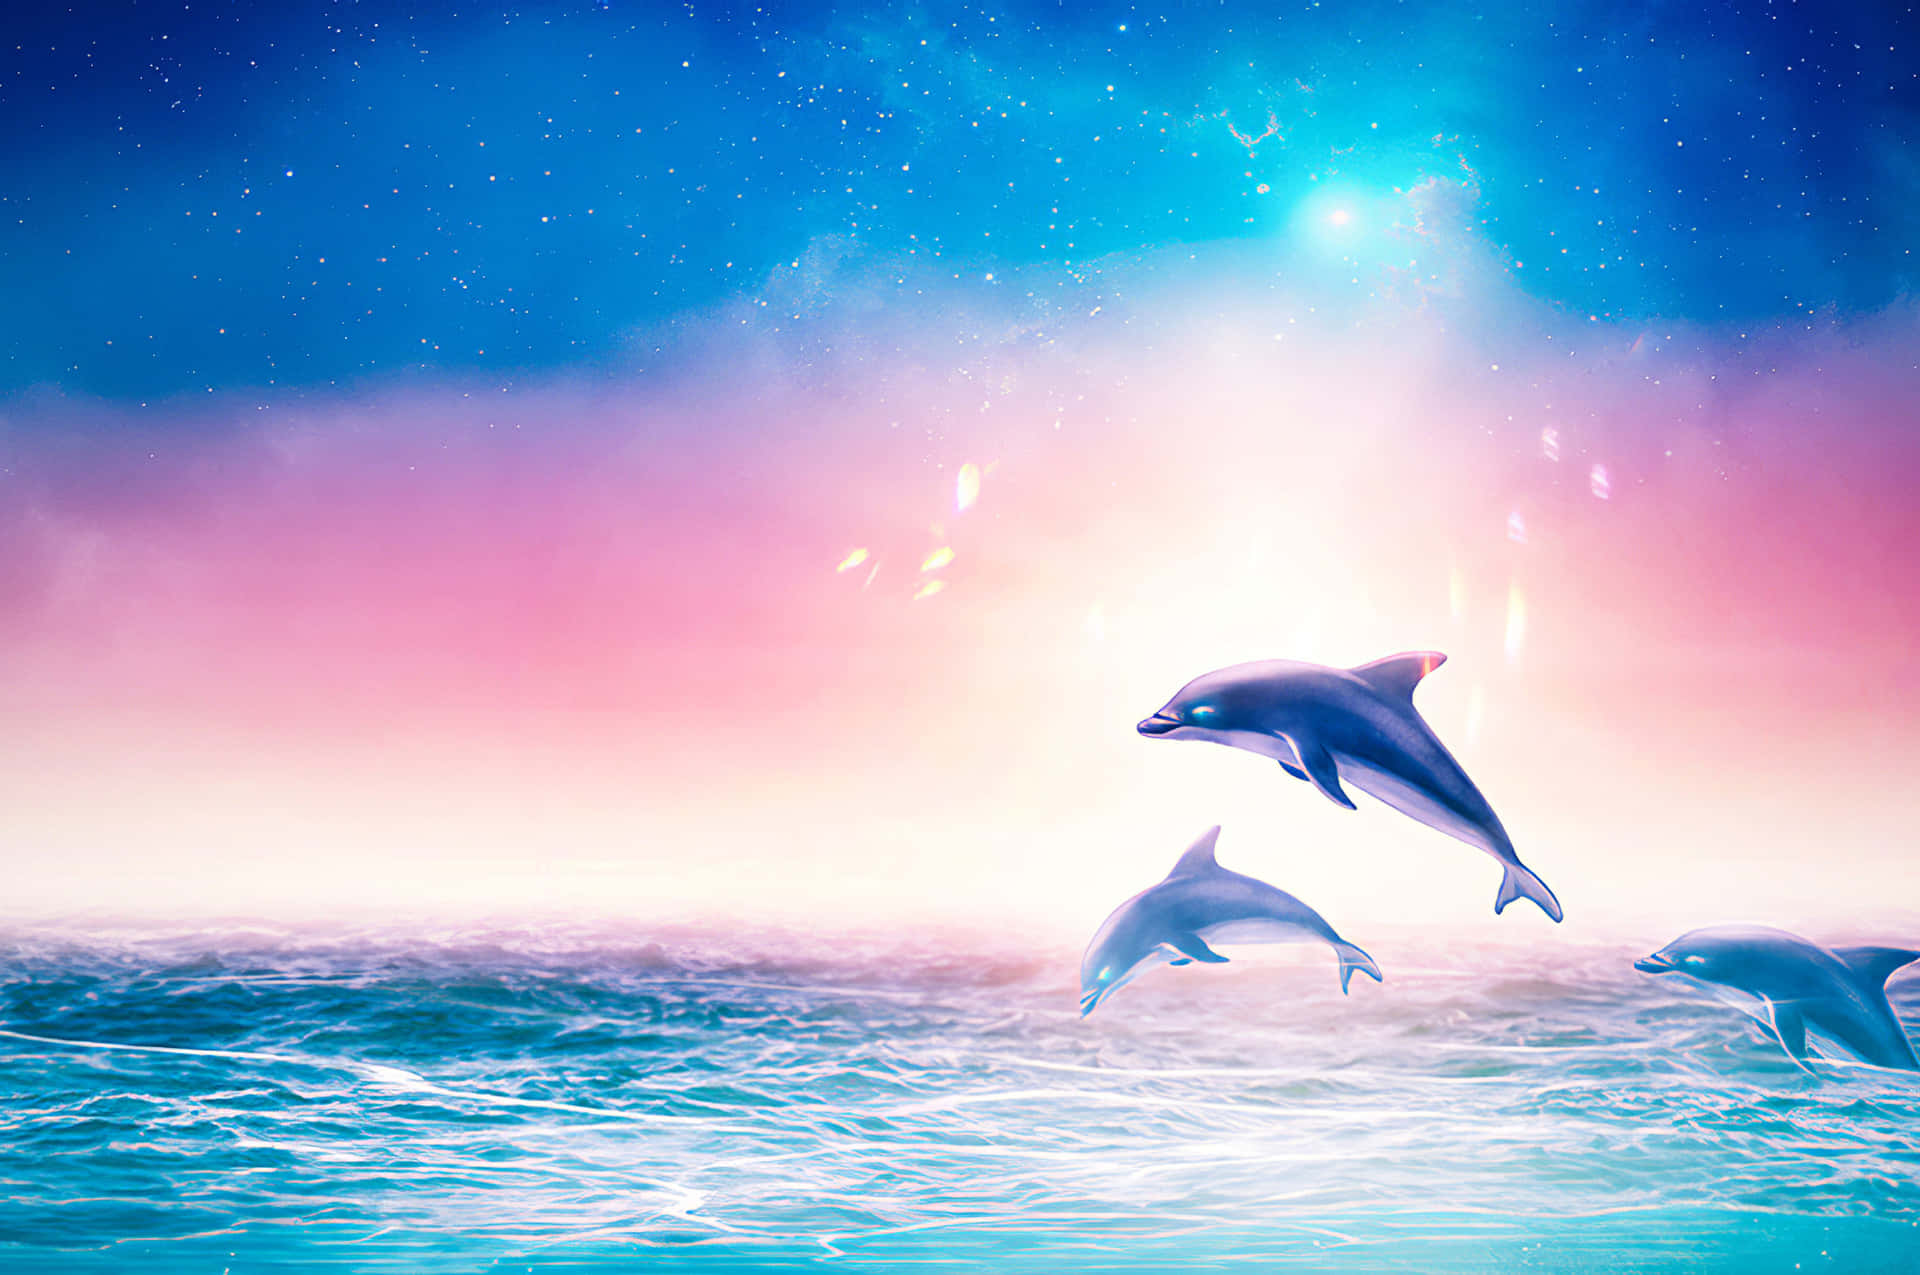 Unosguardo Ravvicinato Ai Delfini Avvistati In Mare Aperto.